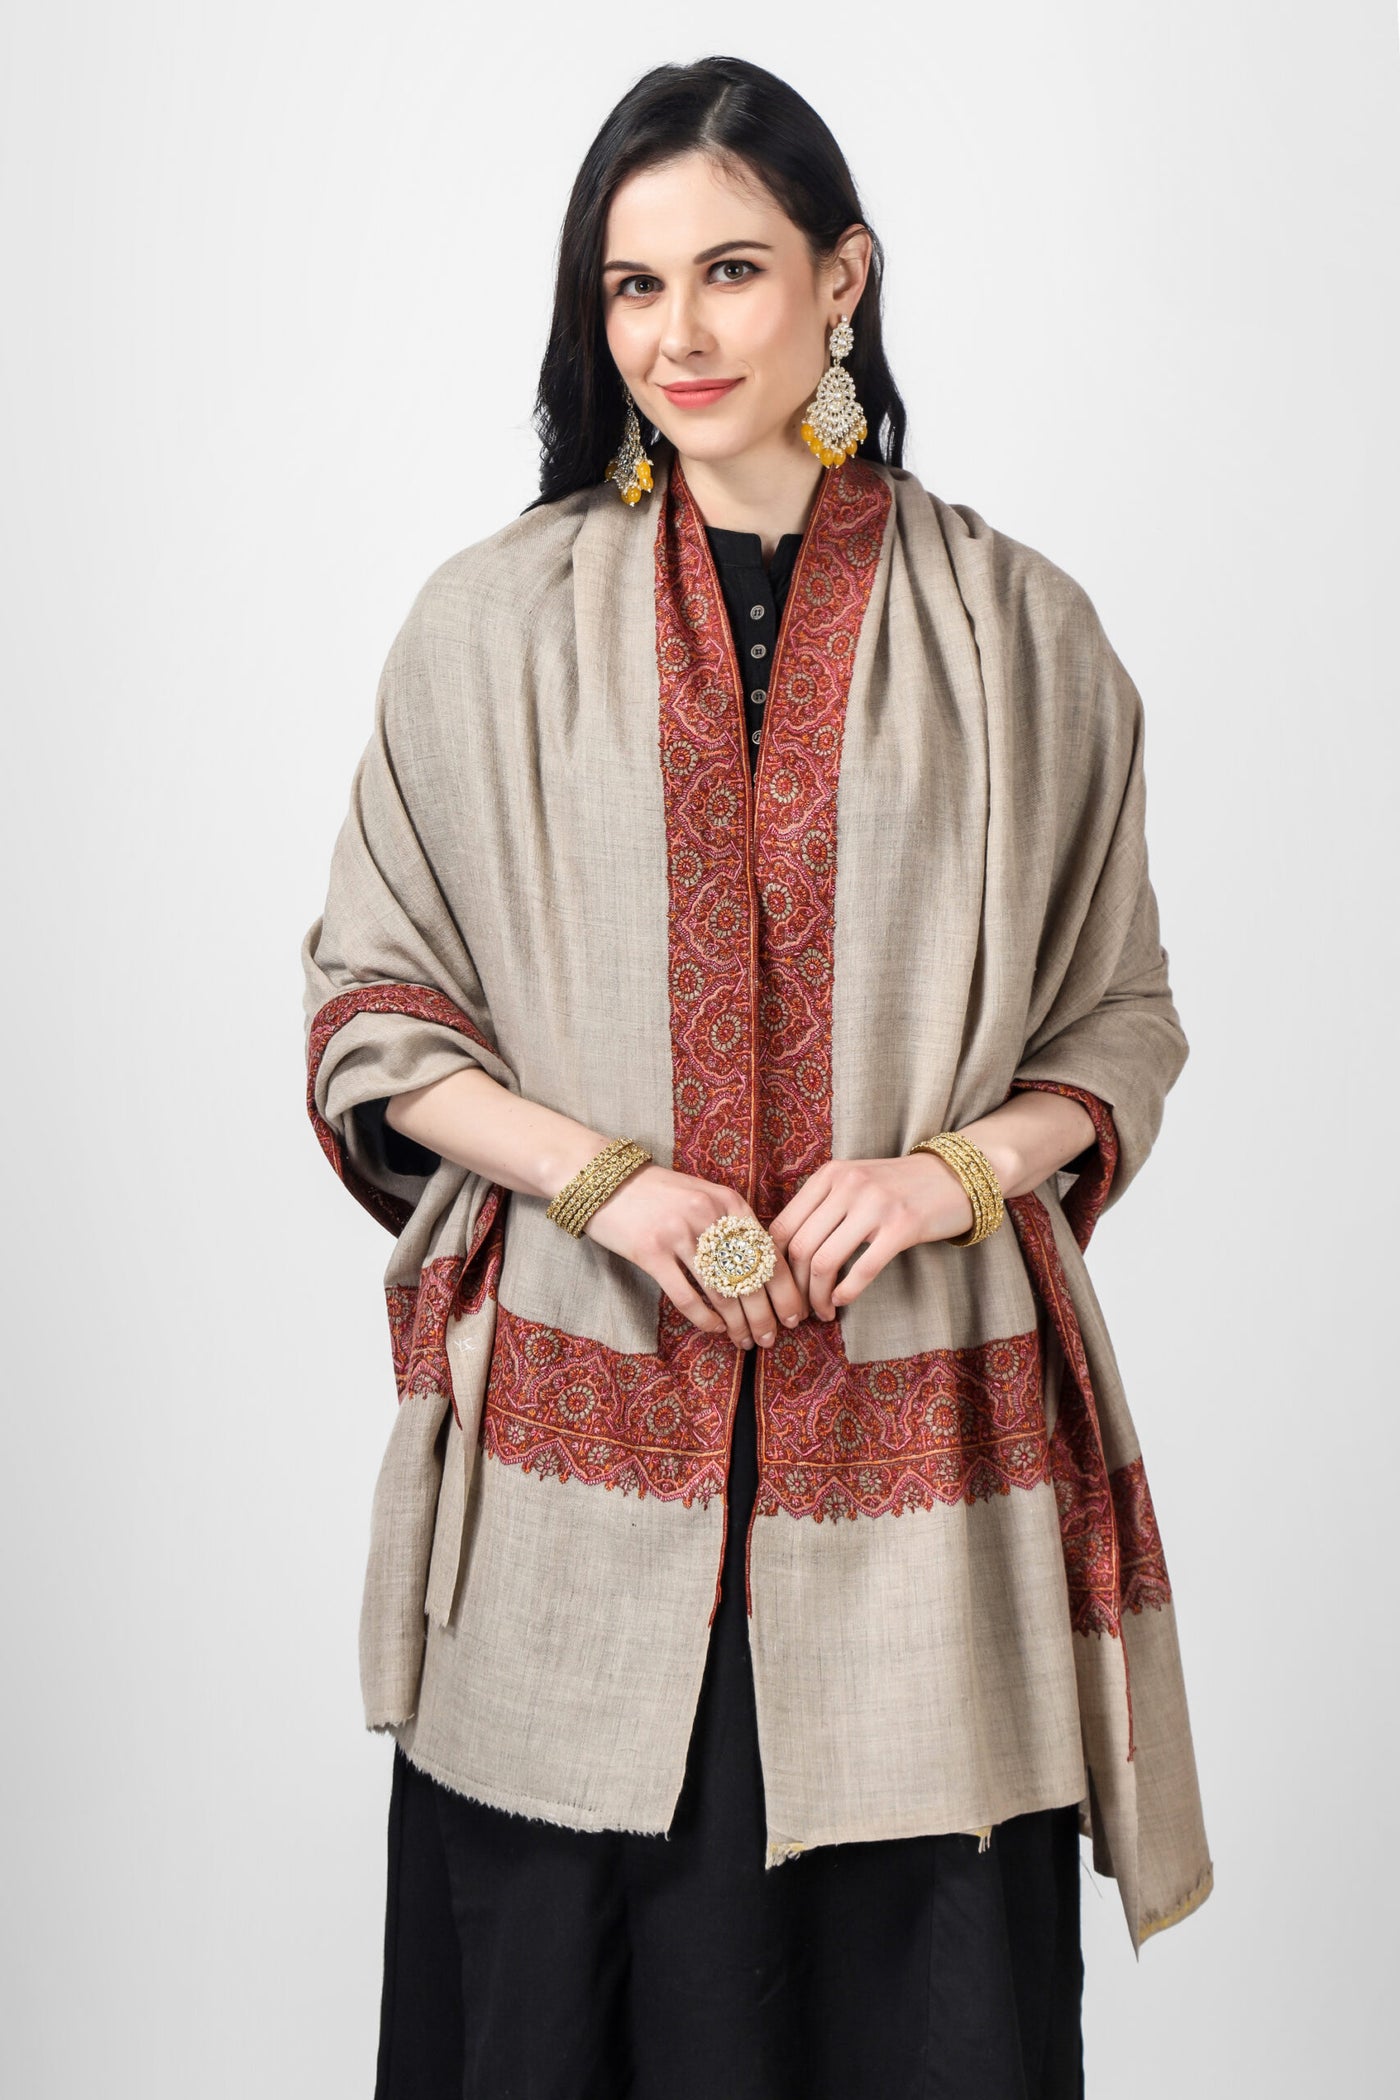 khudrang natural Pashmina border  sozni shawl